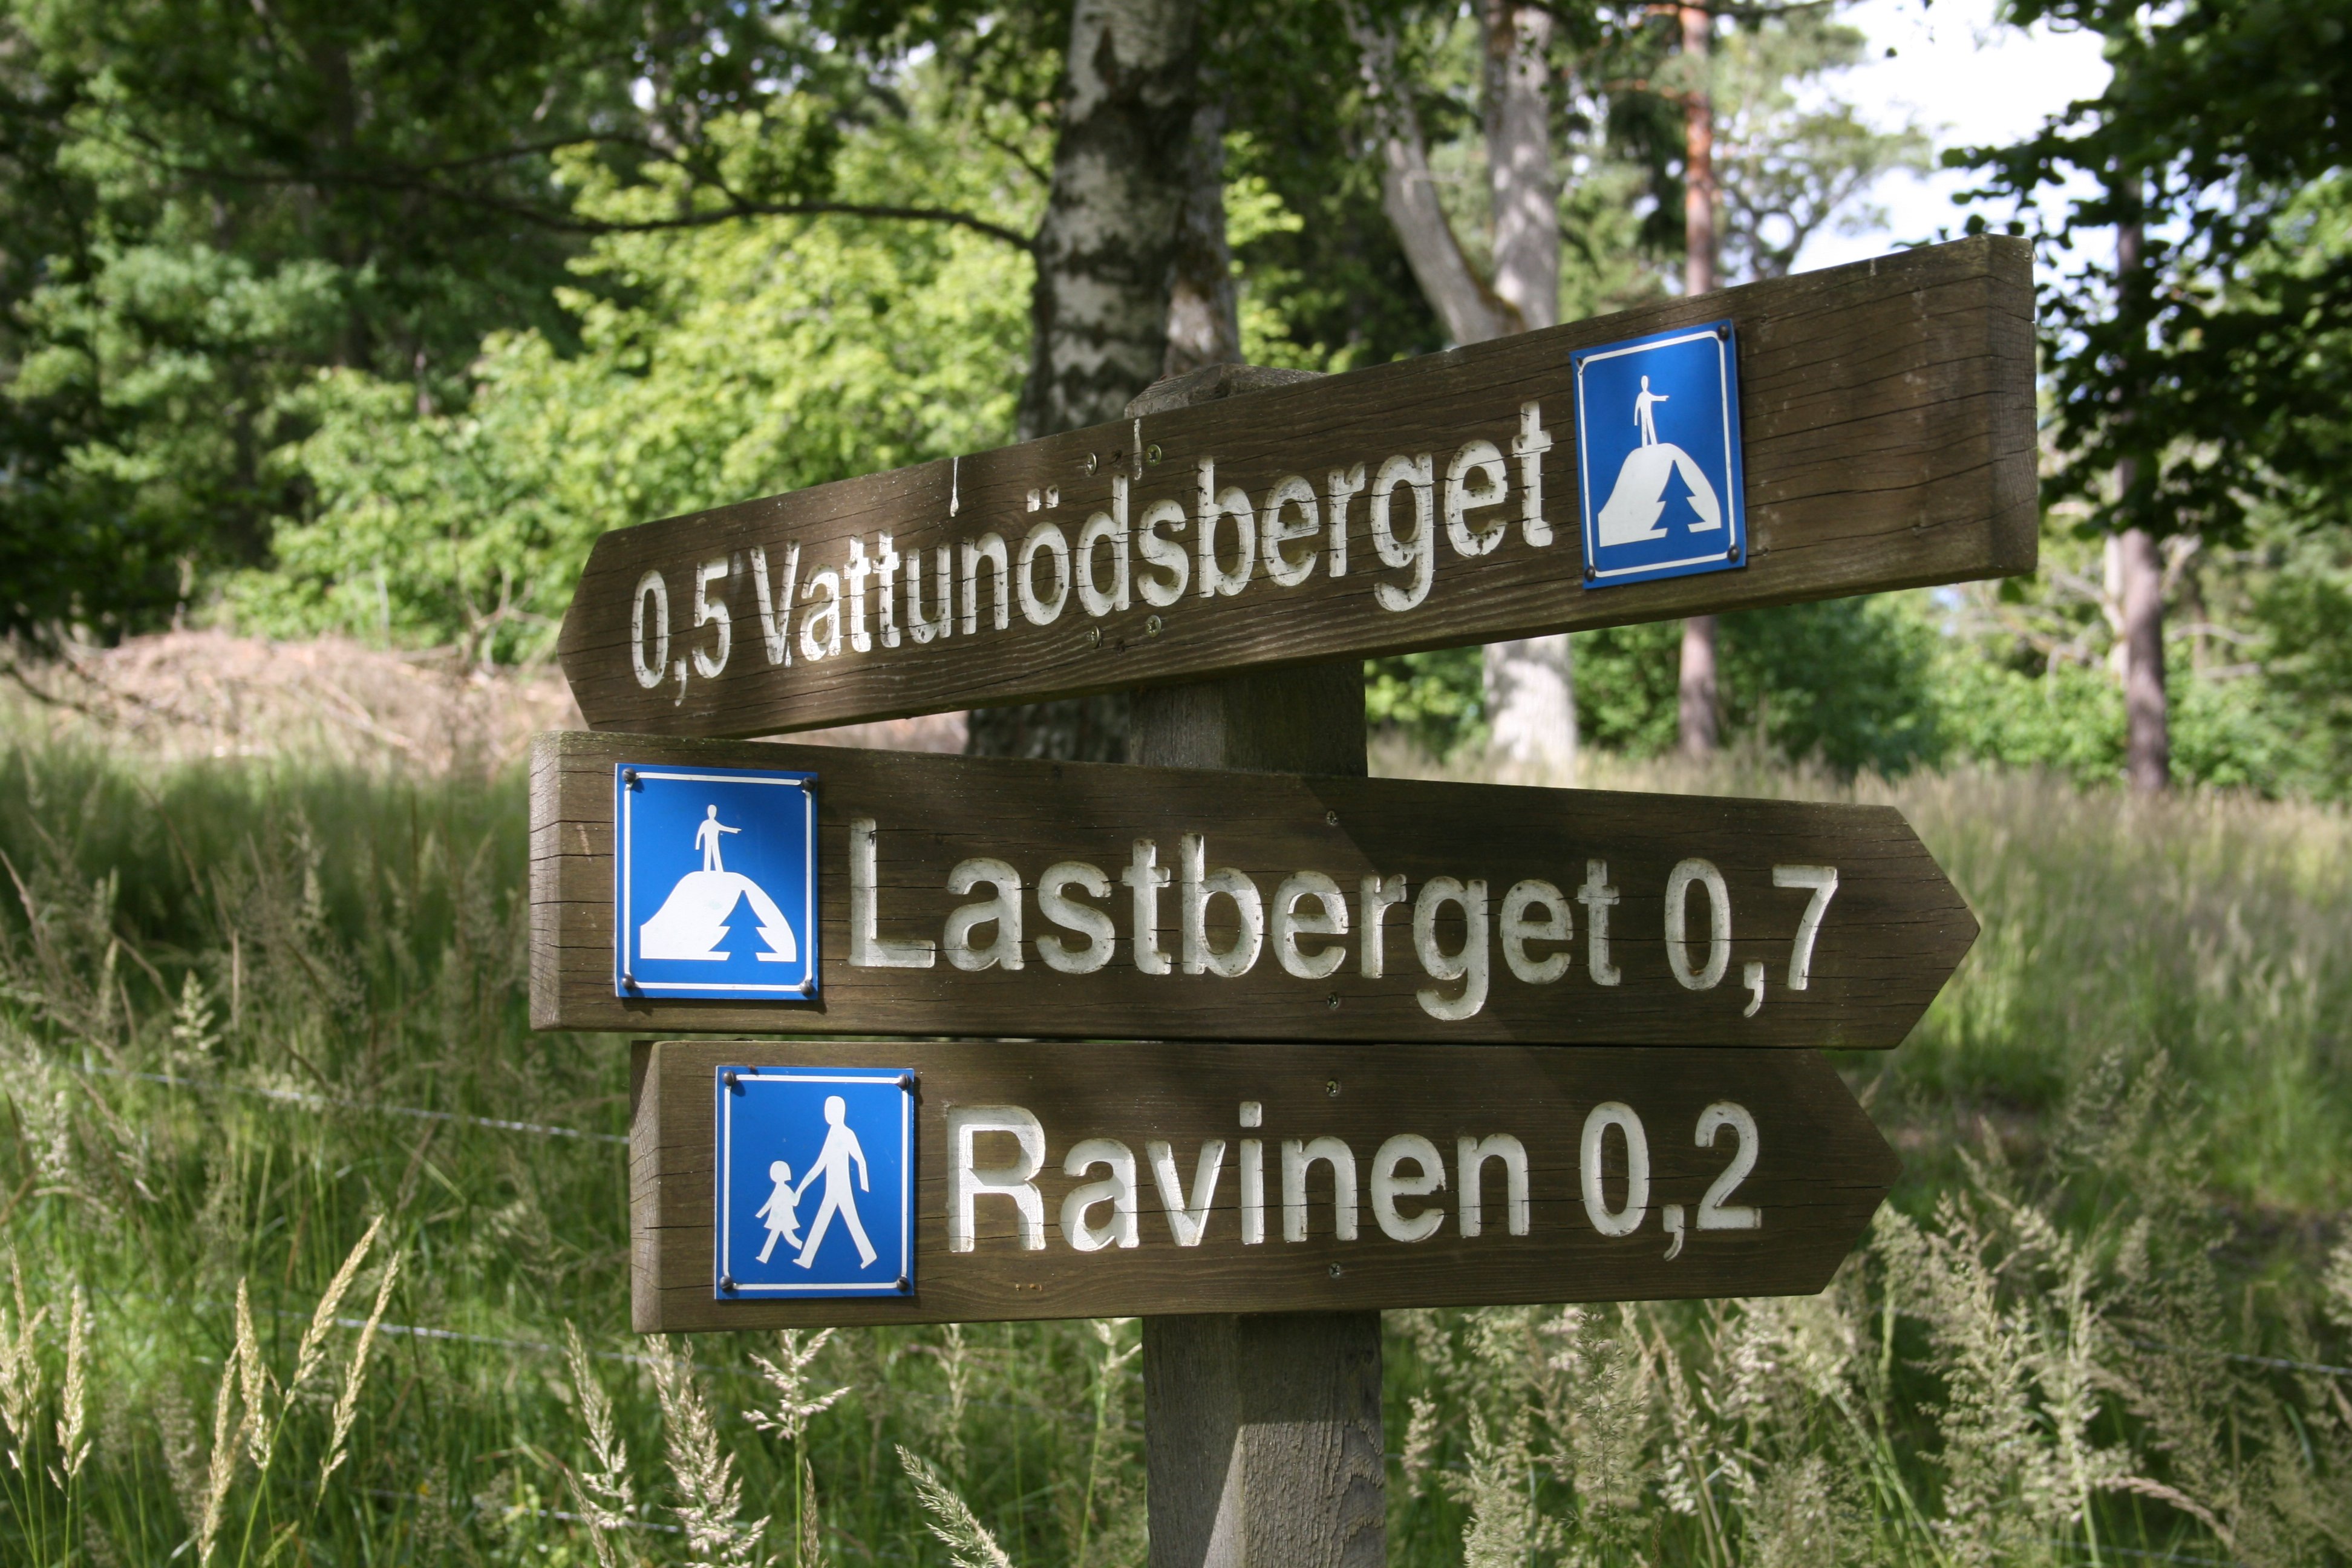 En vägvisare pekar mot Vattunödsberget, Lastberget och Ravinen.